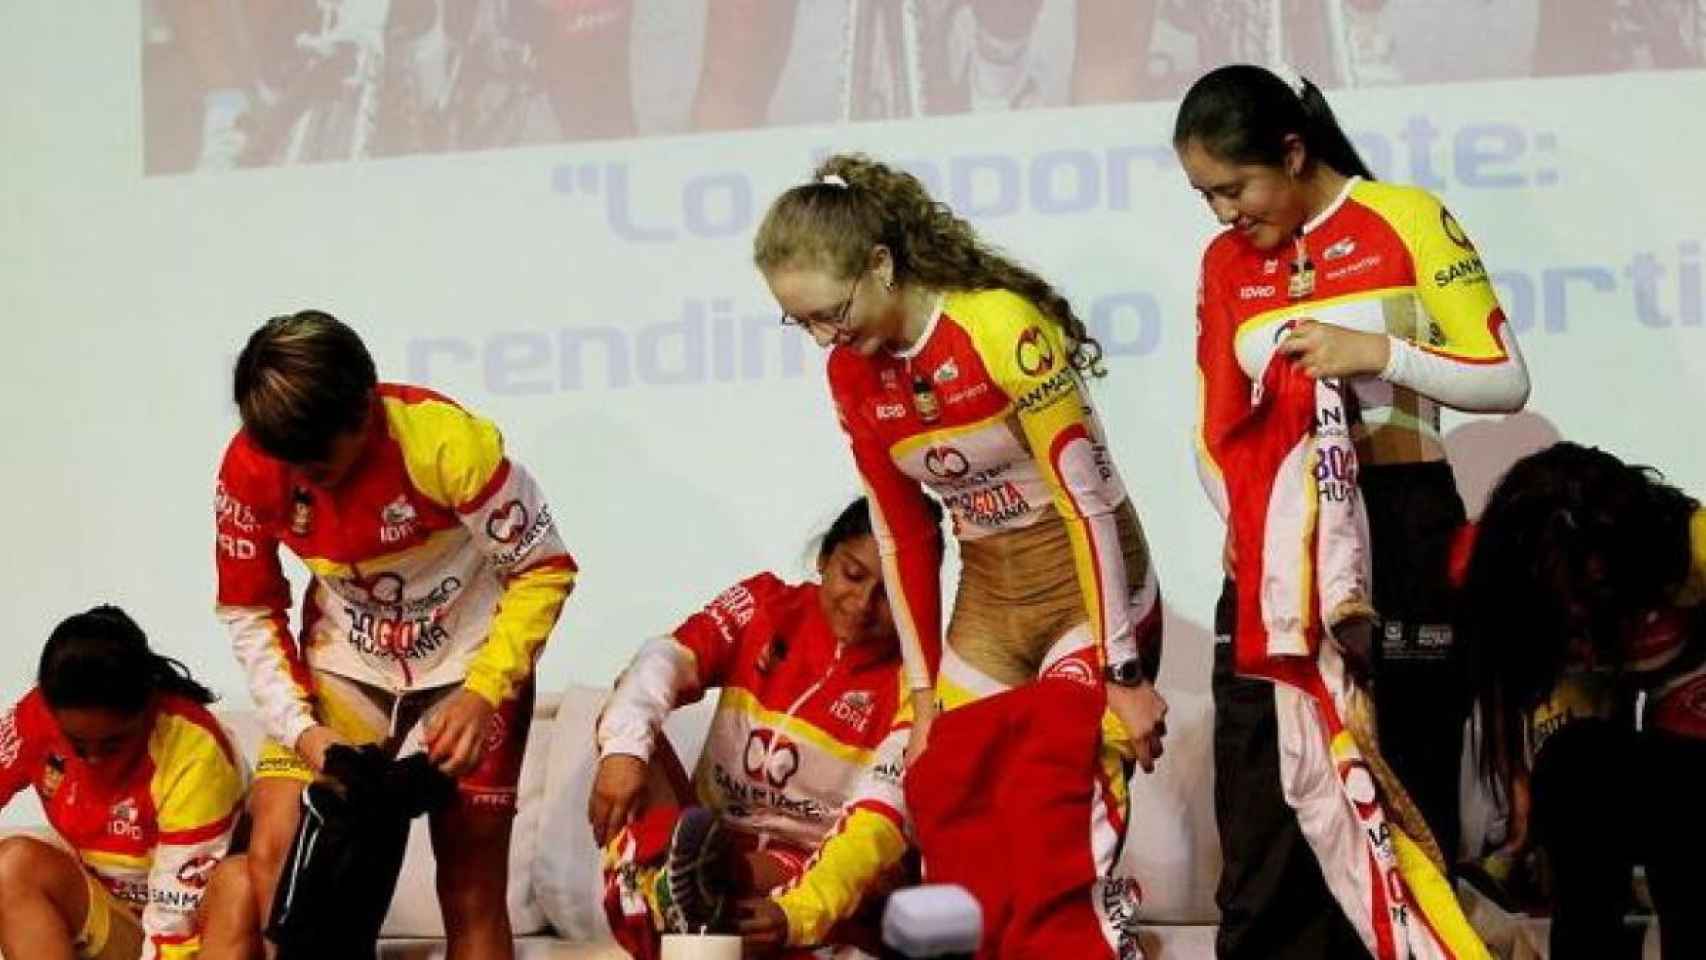 El polémico uniforme de unas ciclistas colombianas / EFE